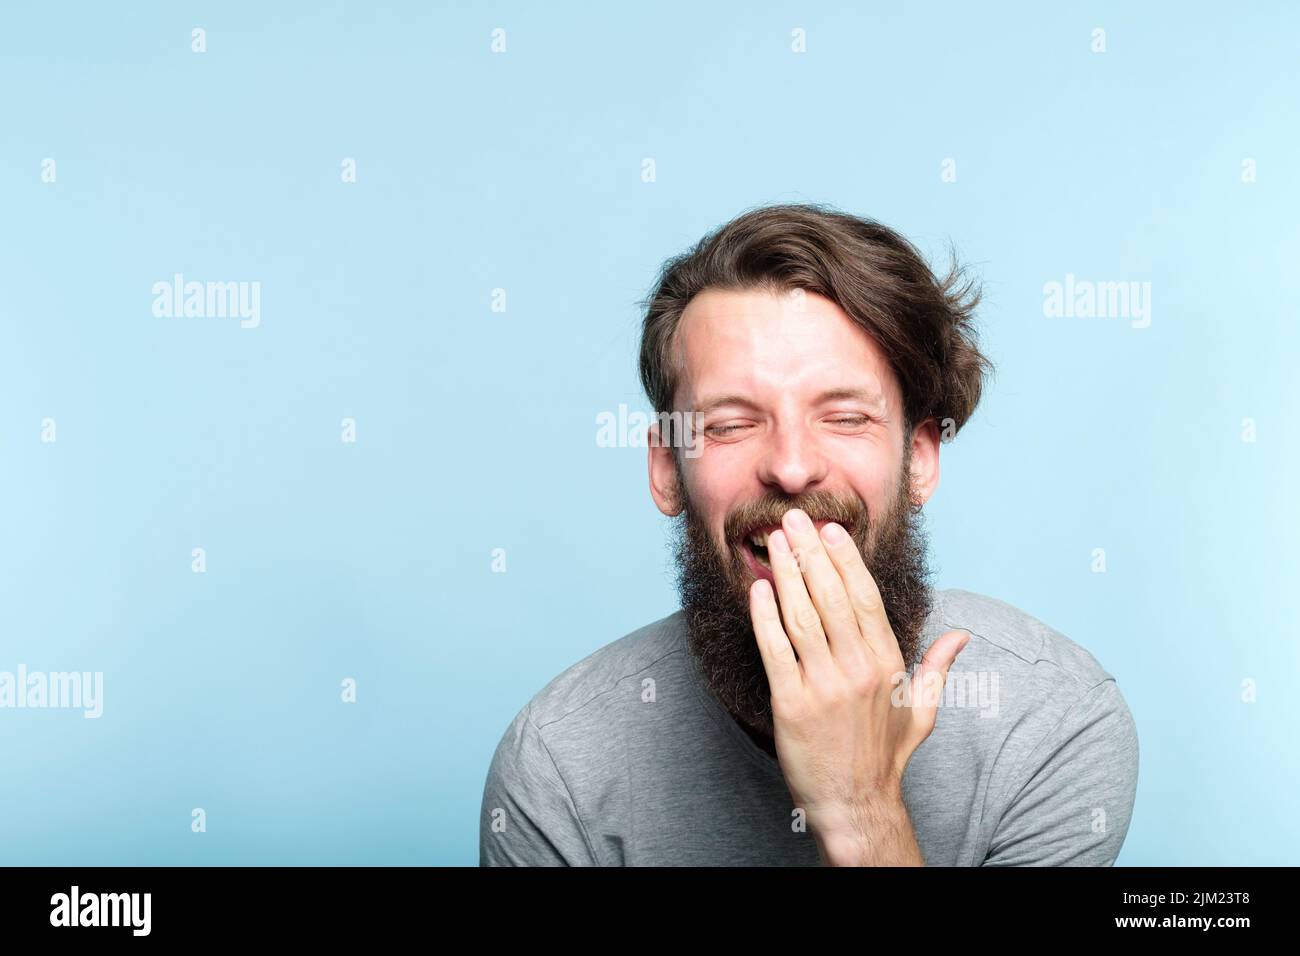 emotion lol joyful exhilarated bearded man laugh Stock Photo